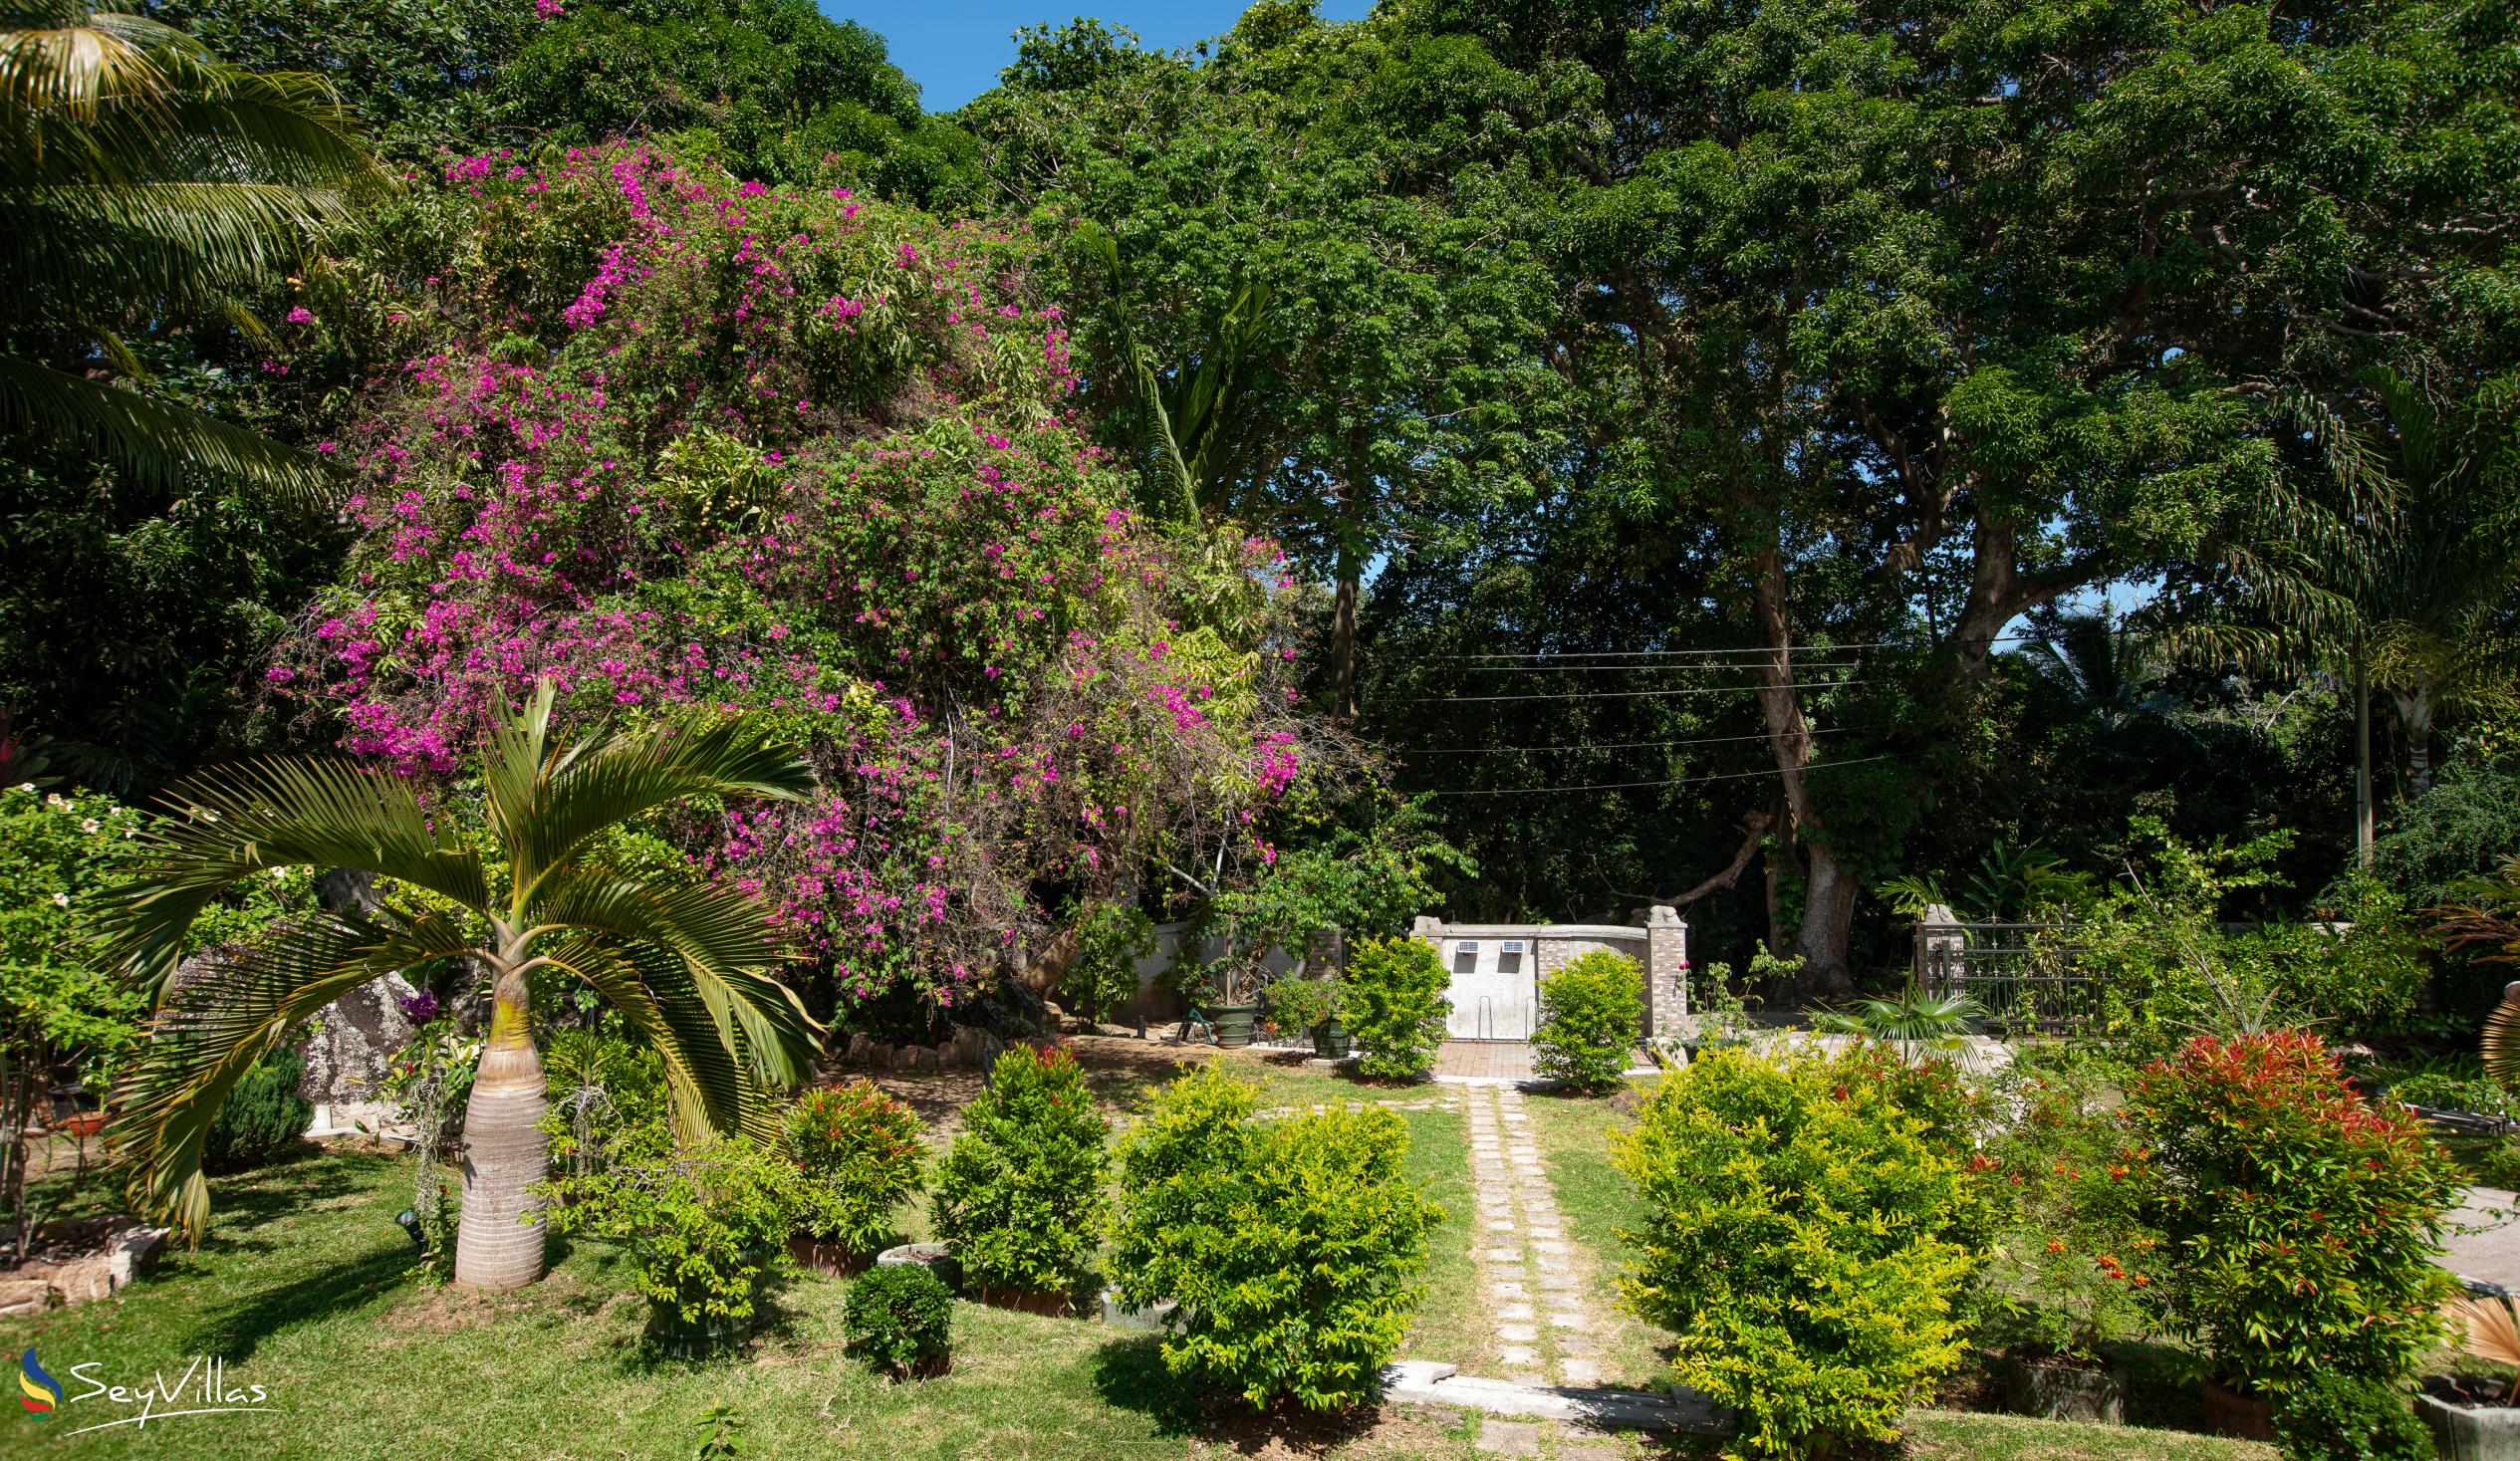 Foto 6: Pension Michel - Villa Roche Bois - Aussenbereich - La Digue (Seychellen)